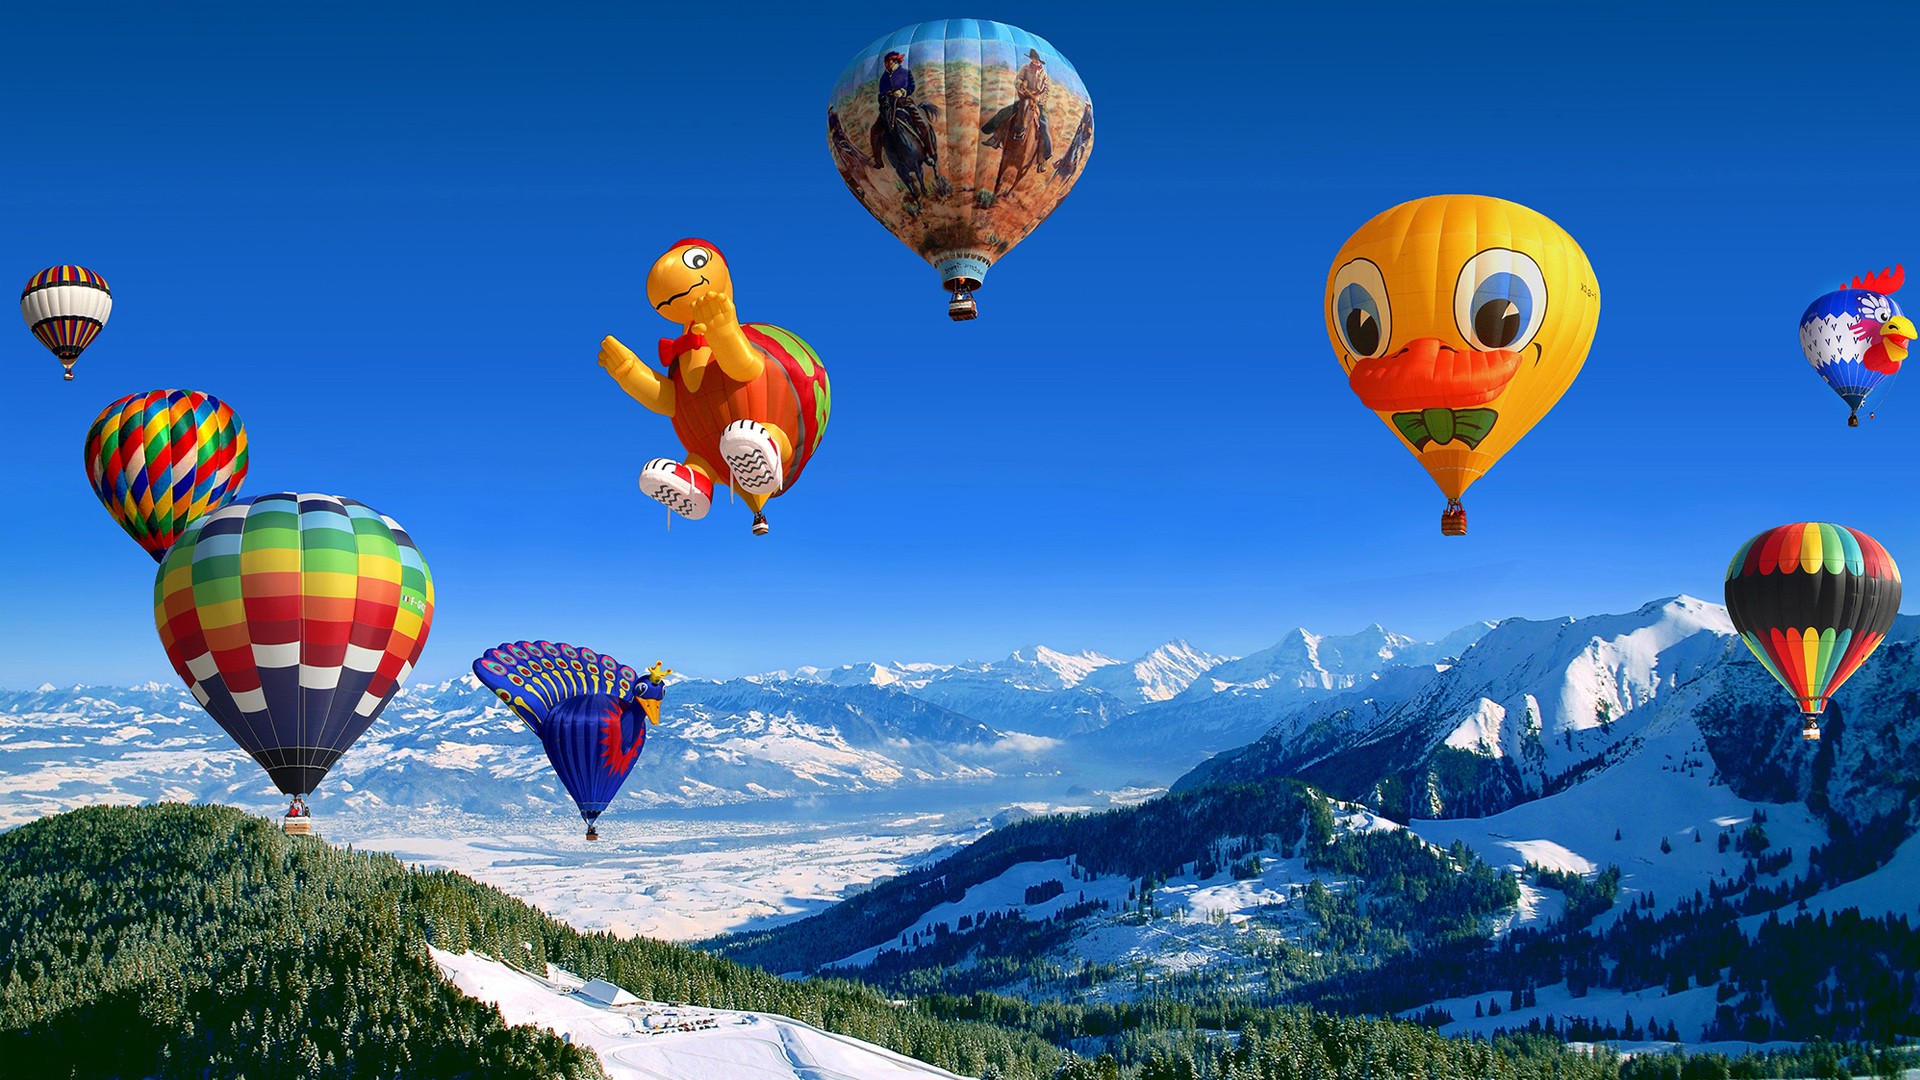 fond d'écran hd image chaude,faire du ballon ascensionnel,montgolfière,ciel,ballon,véhicule